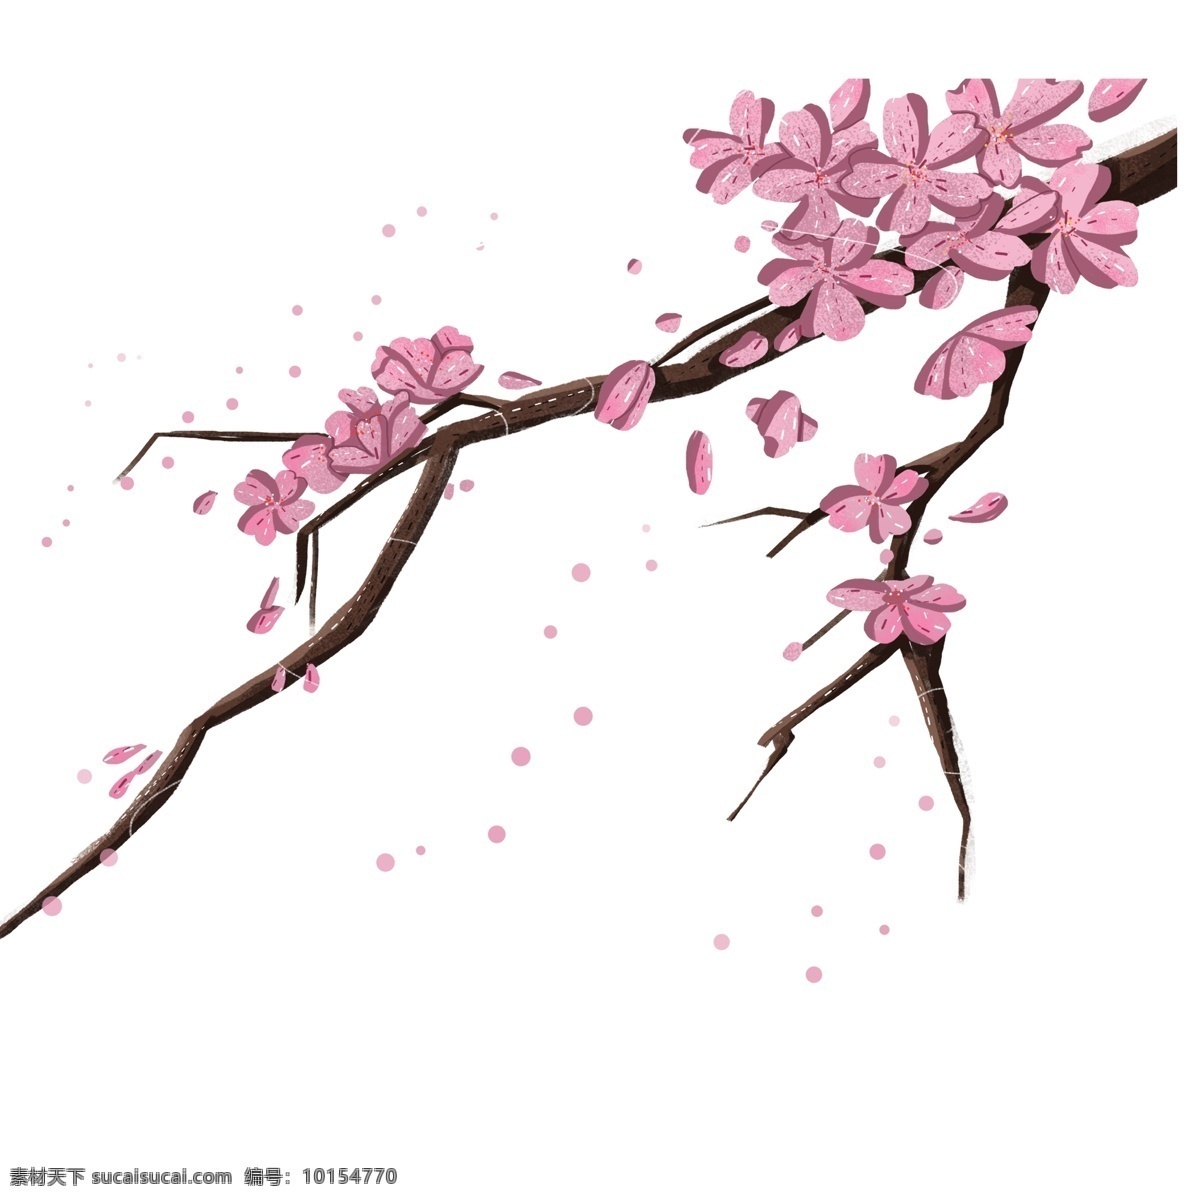 中国 风 梅花 树枝 中国风 唯美 插画 花瓣 优美 粉色 植物设计